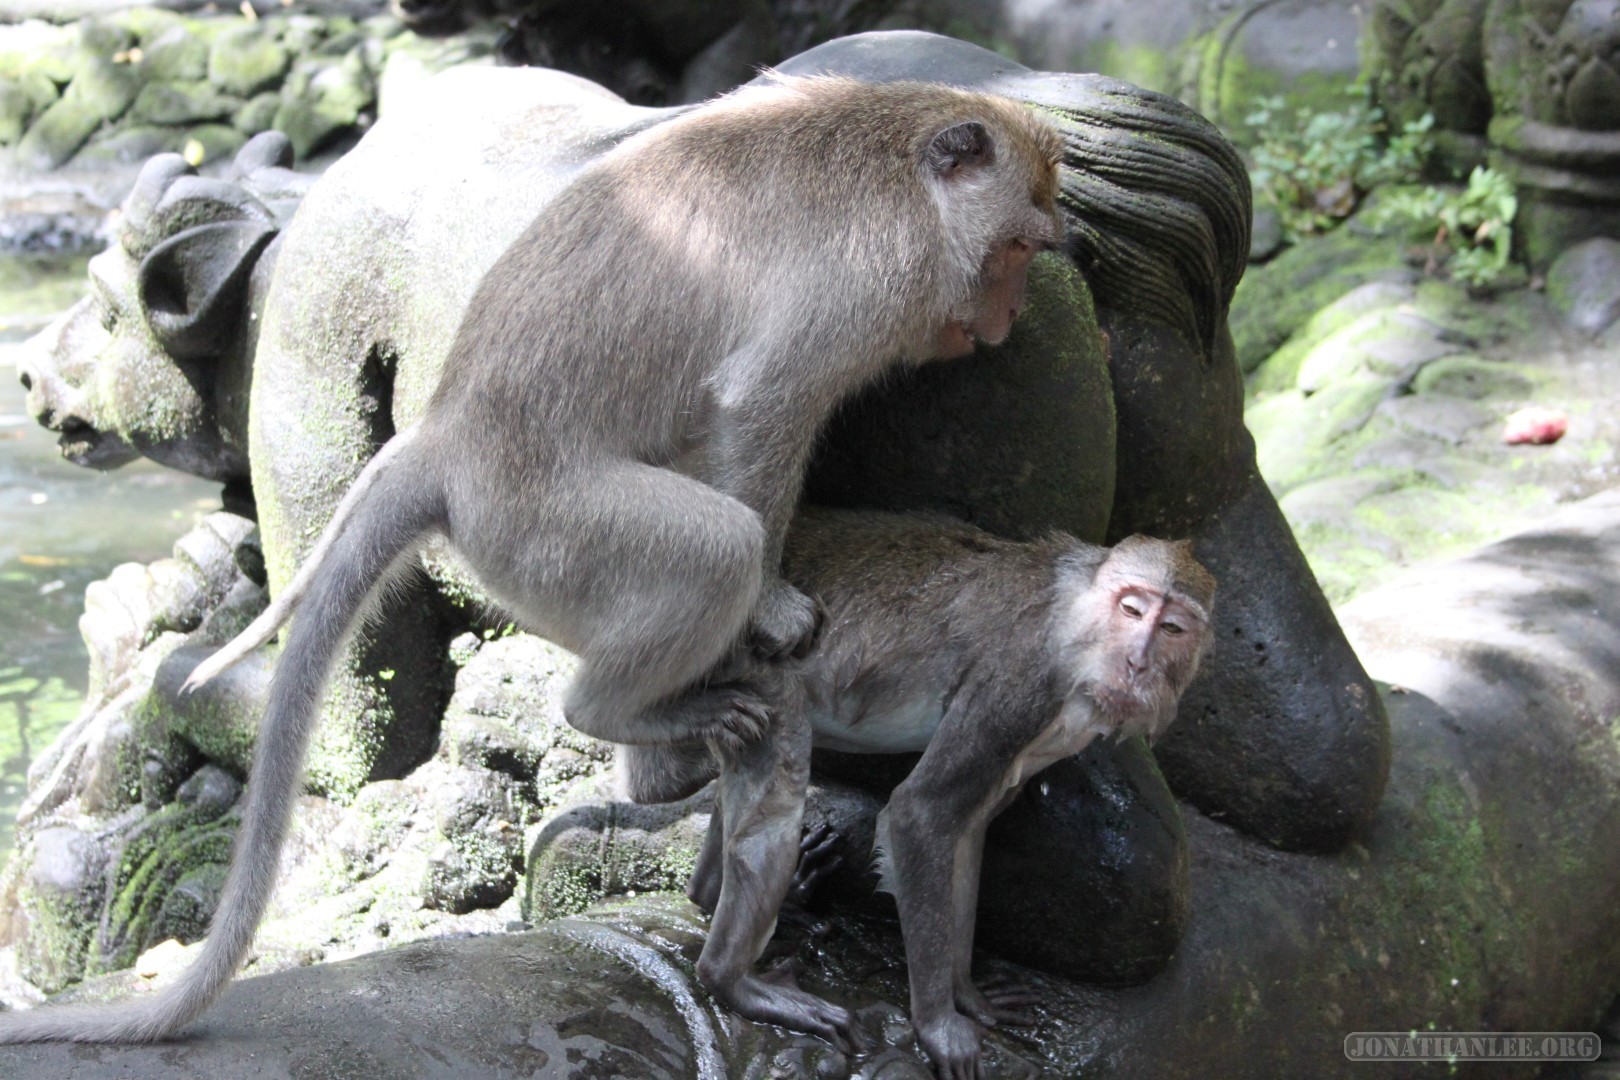 Ubud - monkey mating.